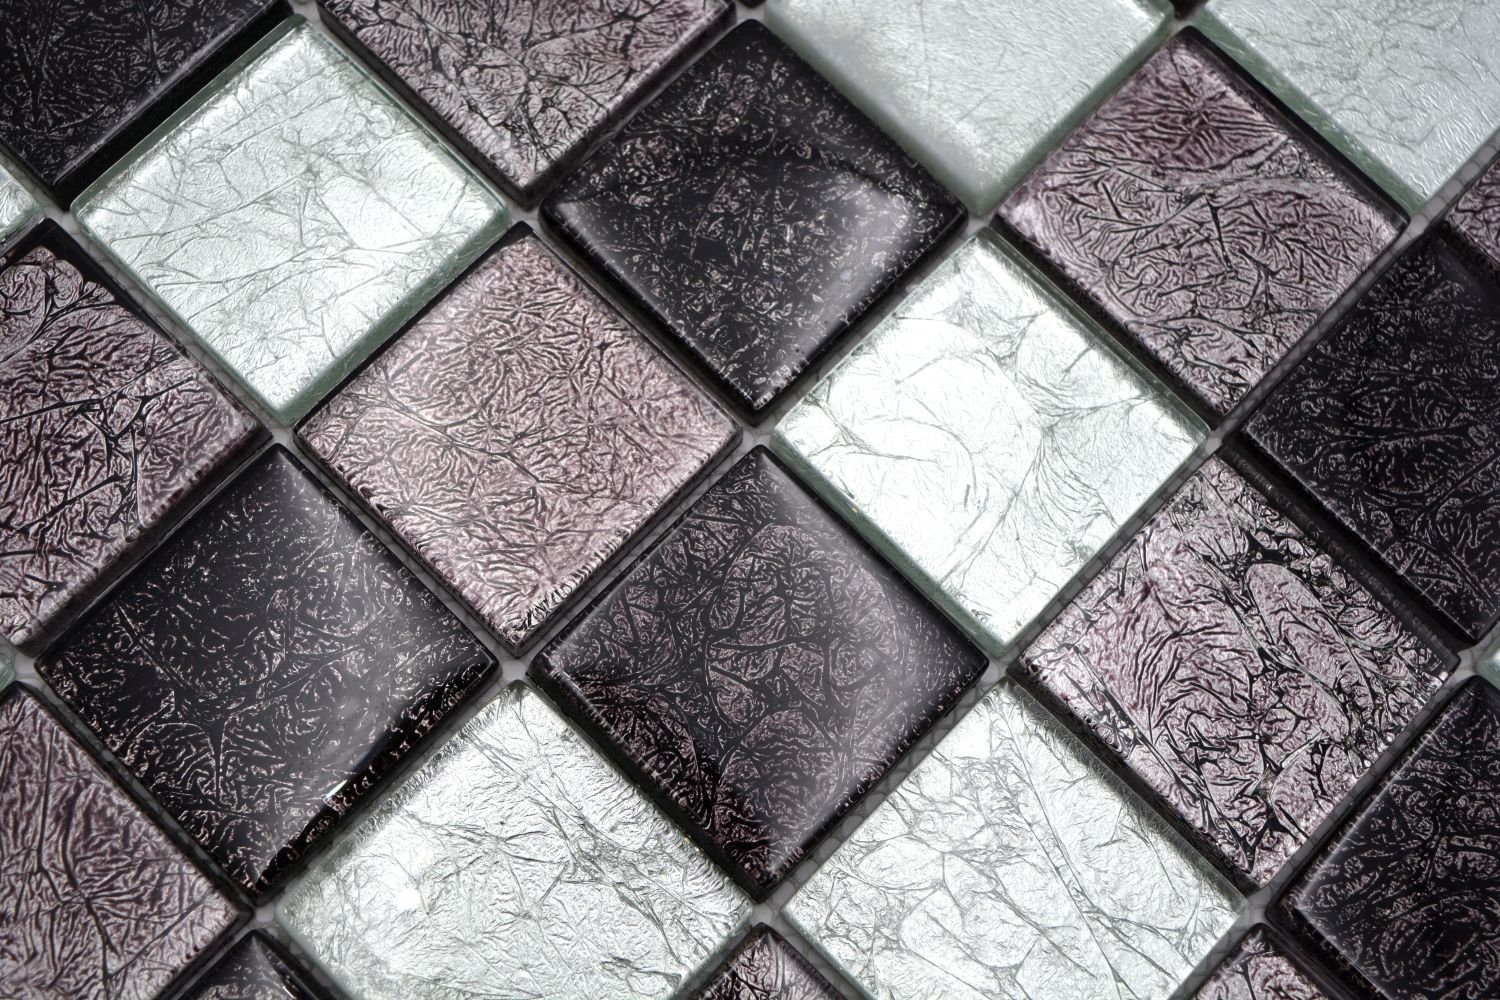 Mosani Mosaikfliesen Mosaikfliese Glasmosaik Struktur schwarz Optik Metall silber grau